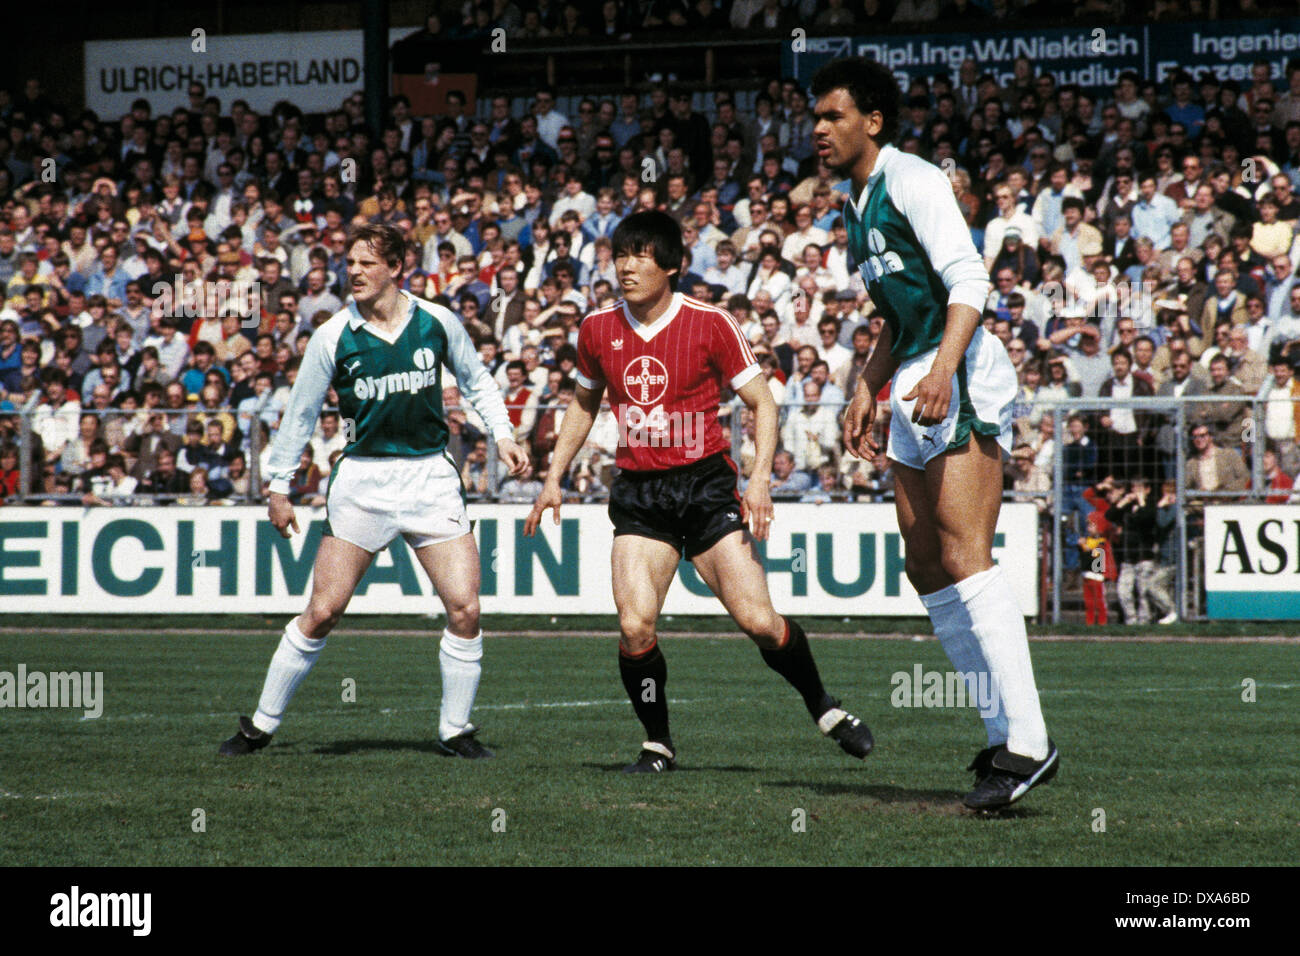 Fußball, Bundesliga, 1983/1984, Ulrich Haberland Stadion, Bayer 04 Leverkusen gegen SV Werder Bremen 0:0, Szene des Spiels, v.l.n.r. Thomas Schaaf (Werder), Bum-Kun Cha (Bayer), Rigobert Gruber (Werder) Stockfoto